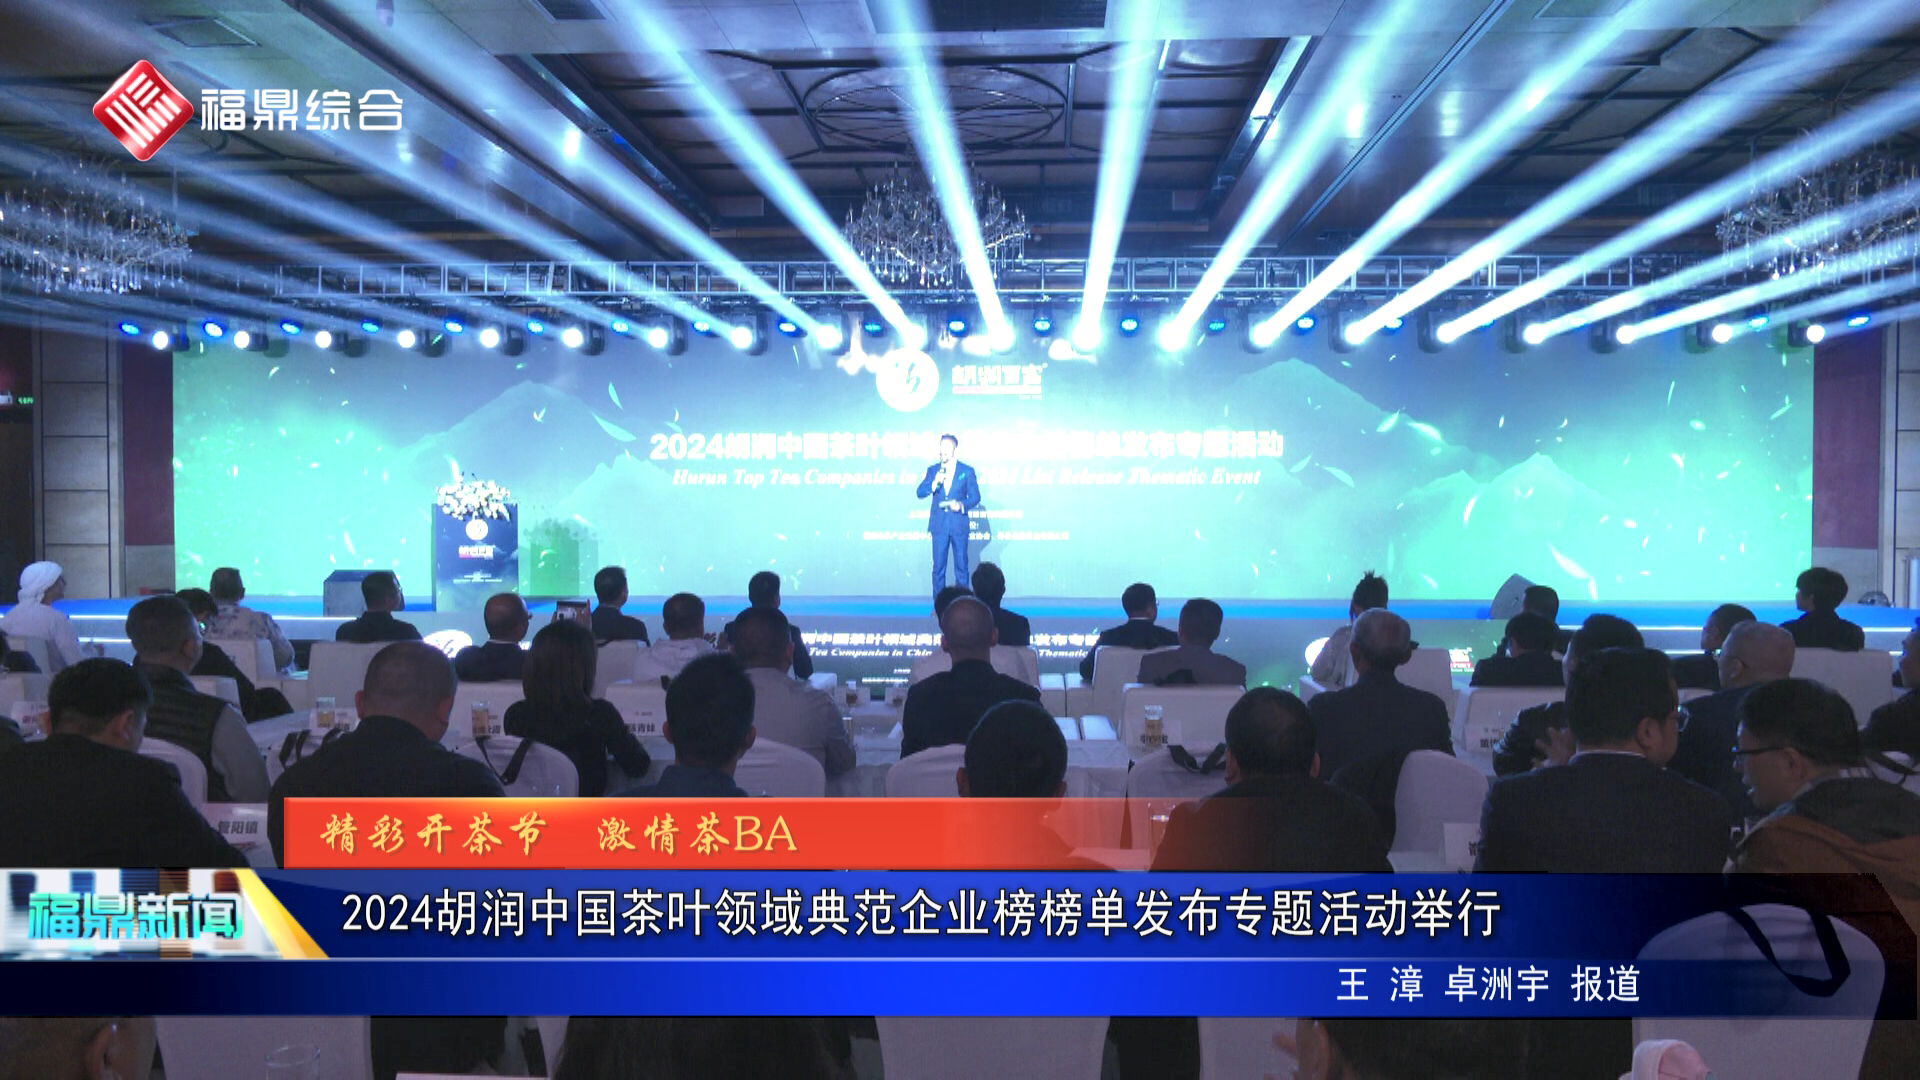 2024胡潤中國茶葉領域典范企業榜榜單發布專題活動舉行